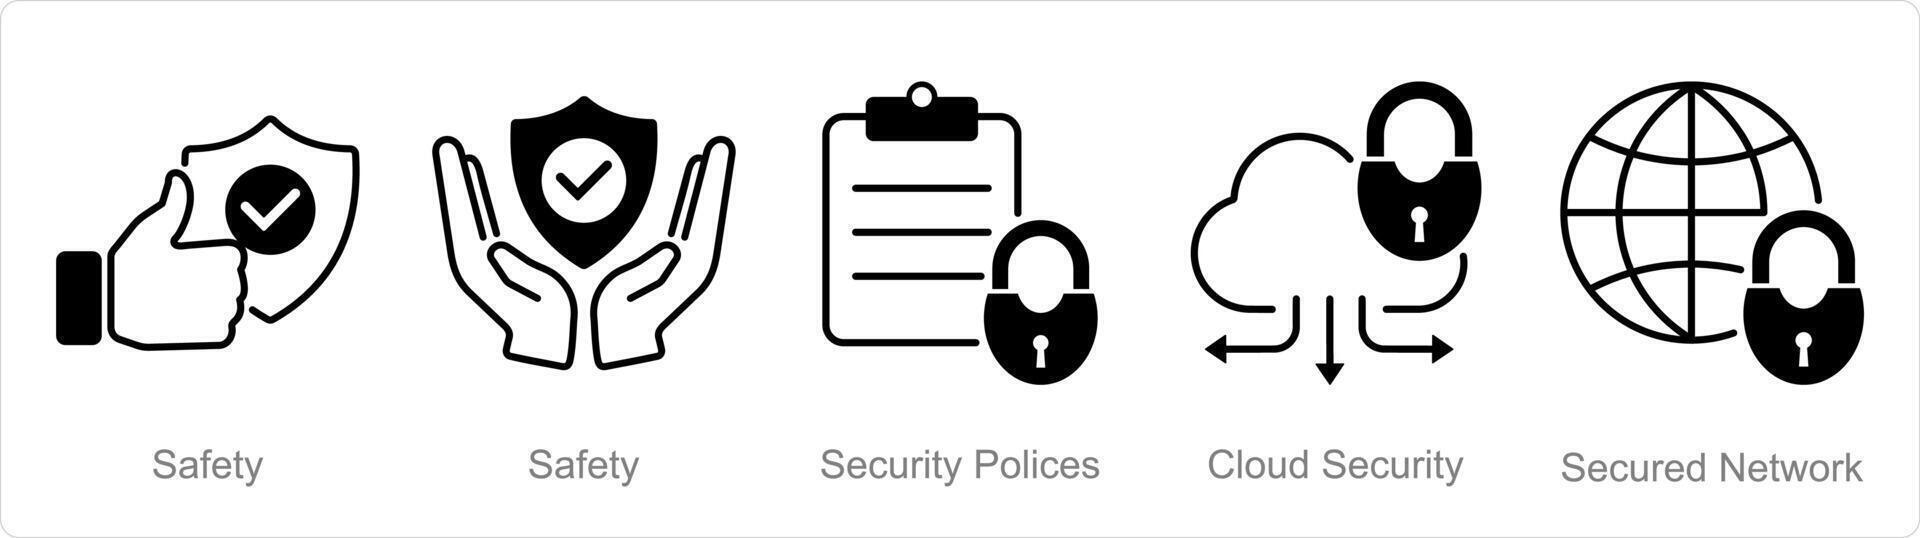 en uppsättning av 5 säkerhet ikoner som säkerhet, säkerhet politik, moln säkerhet vektor